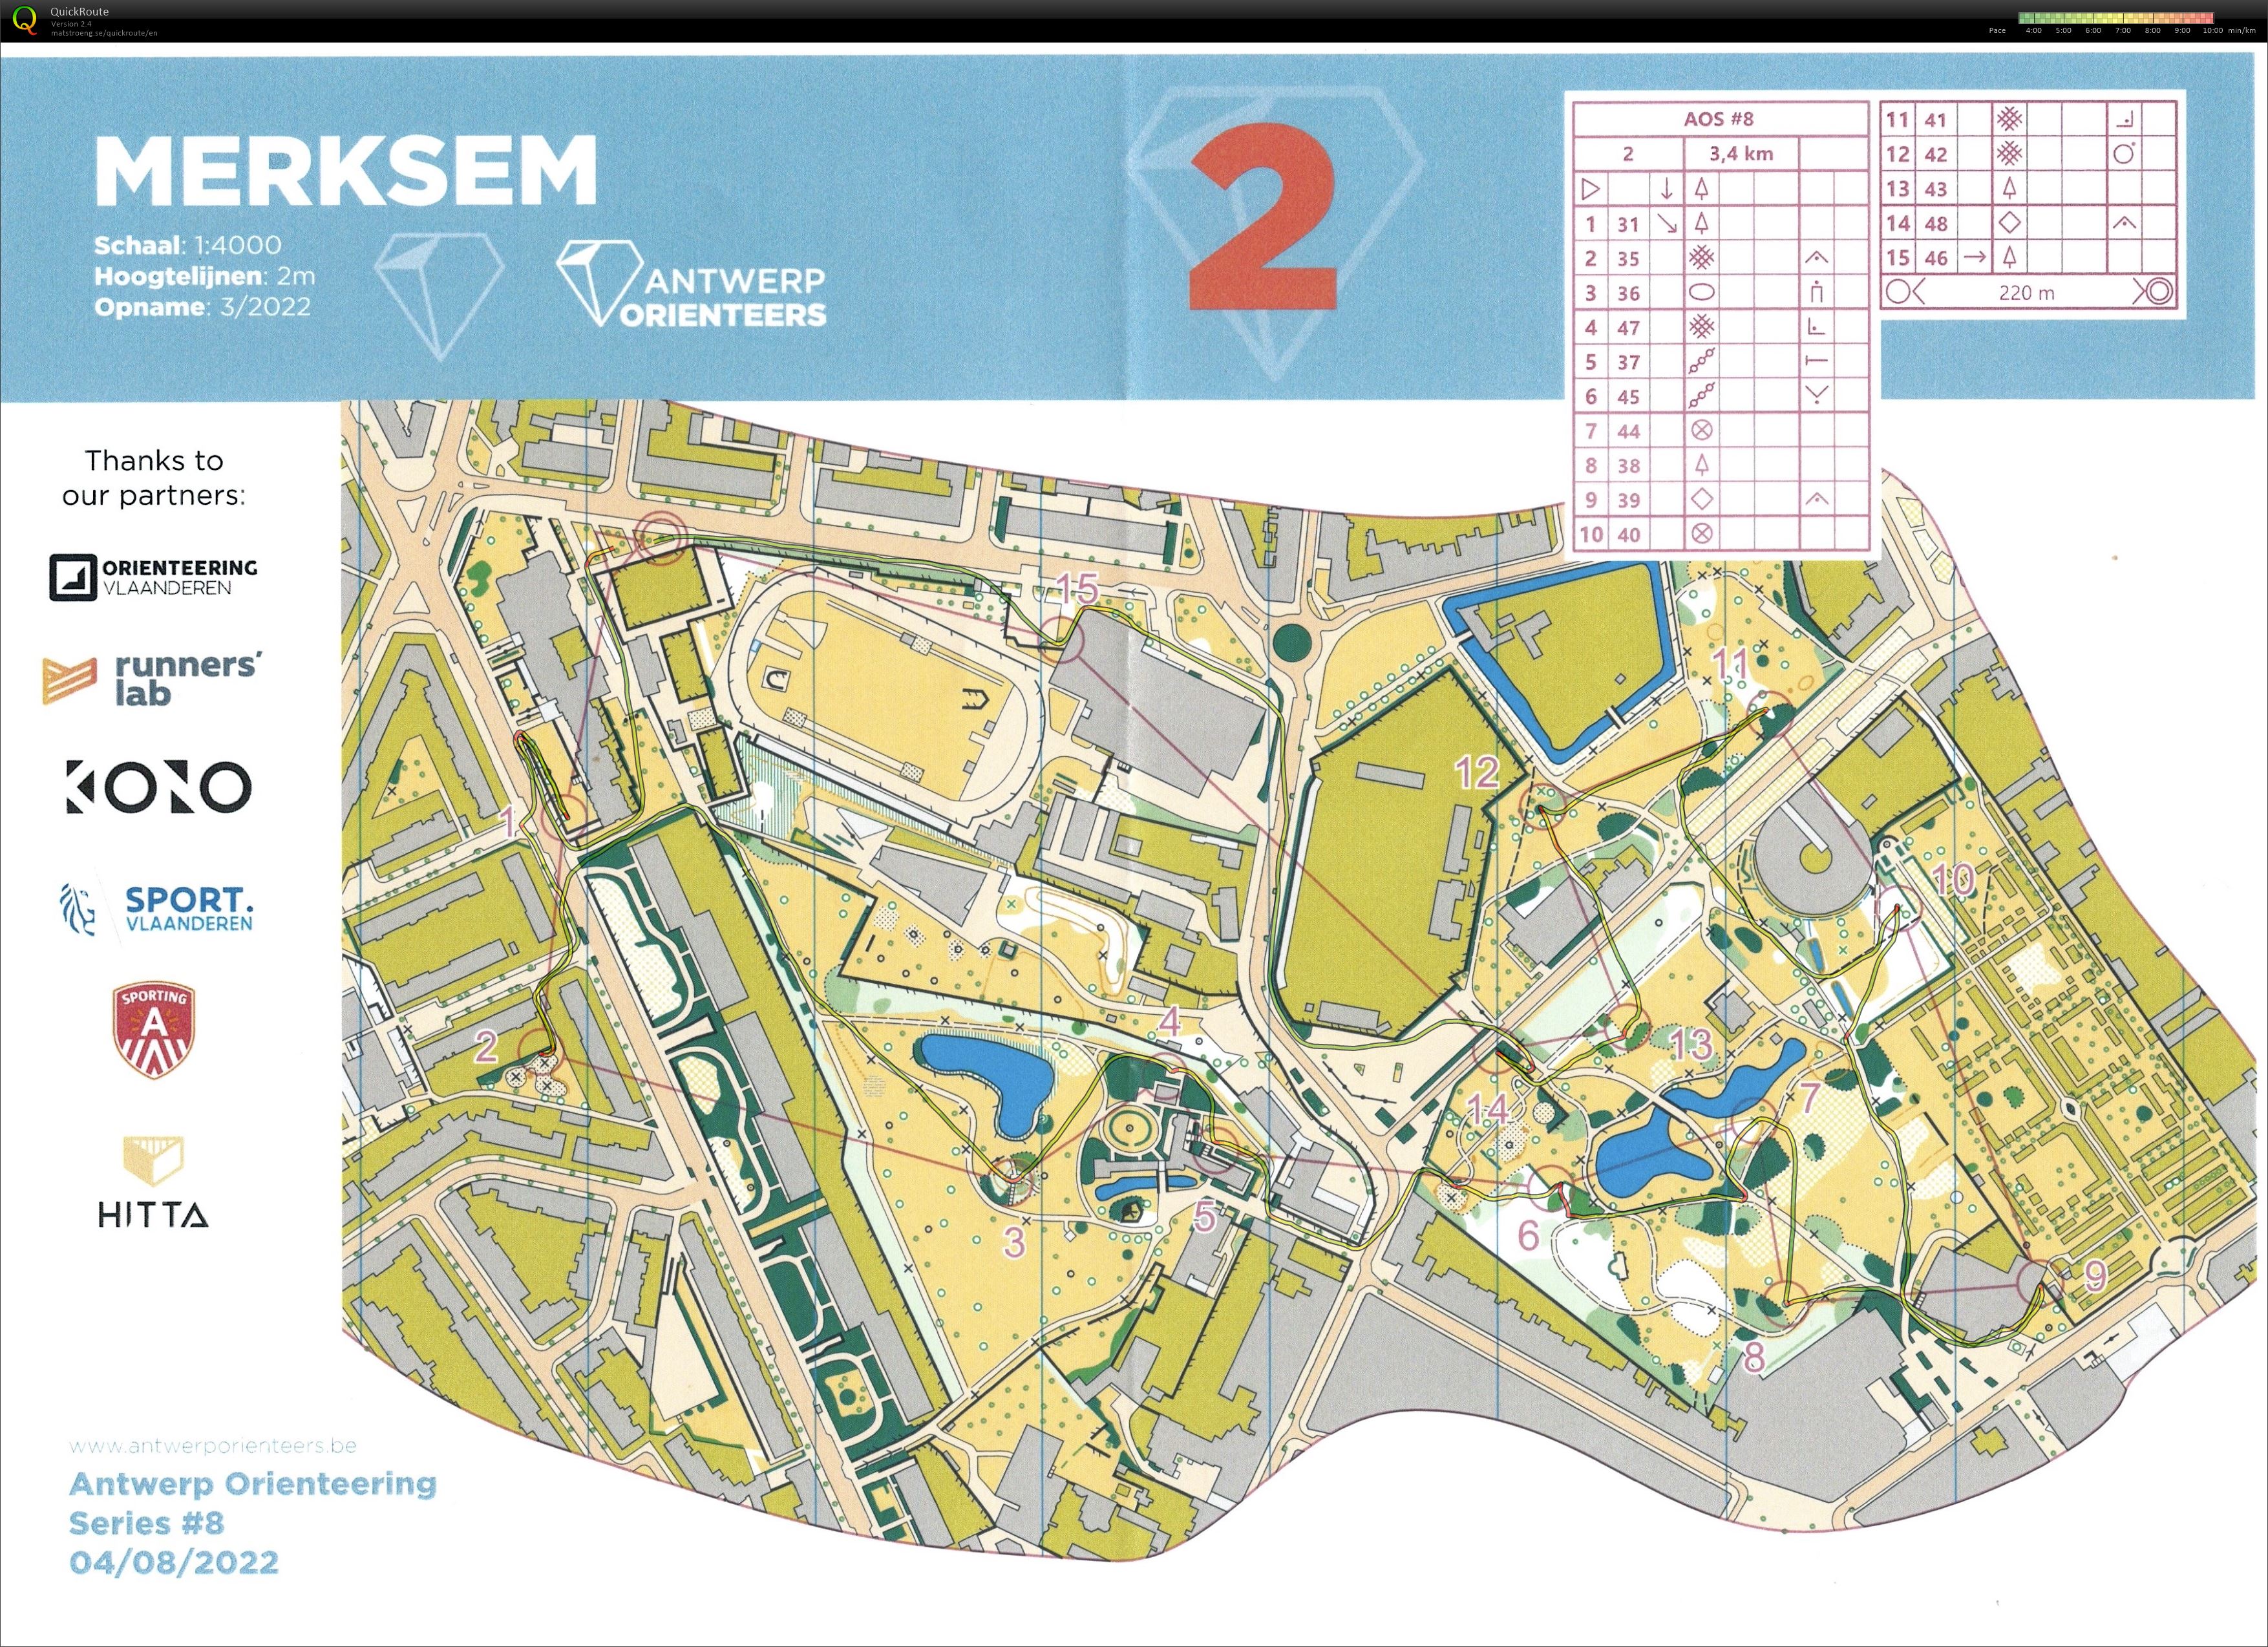 Antwerp Orienteering Series - Merksem - 2 (2022-08-04)